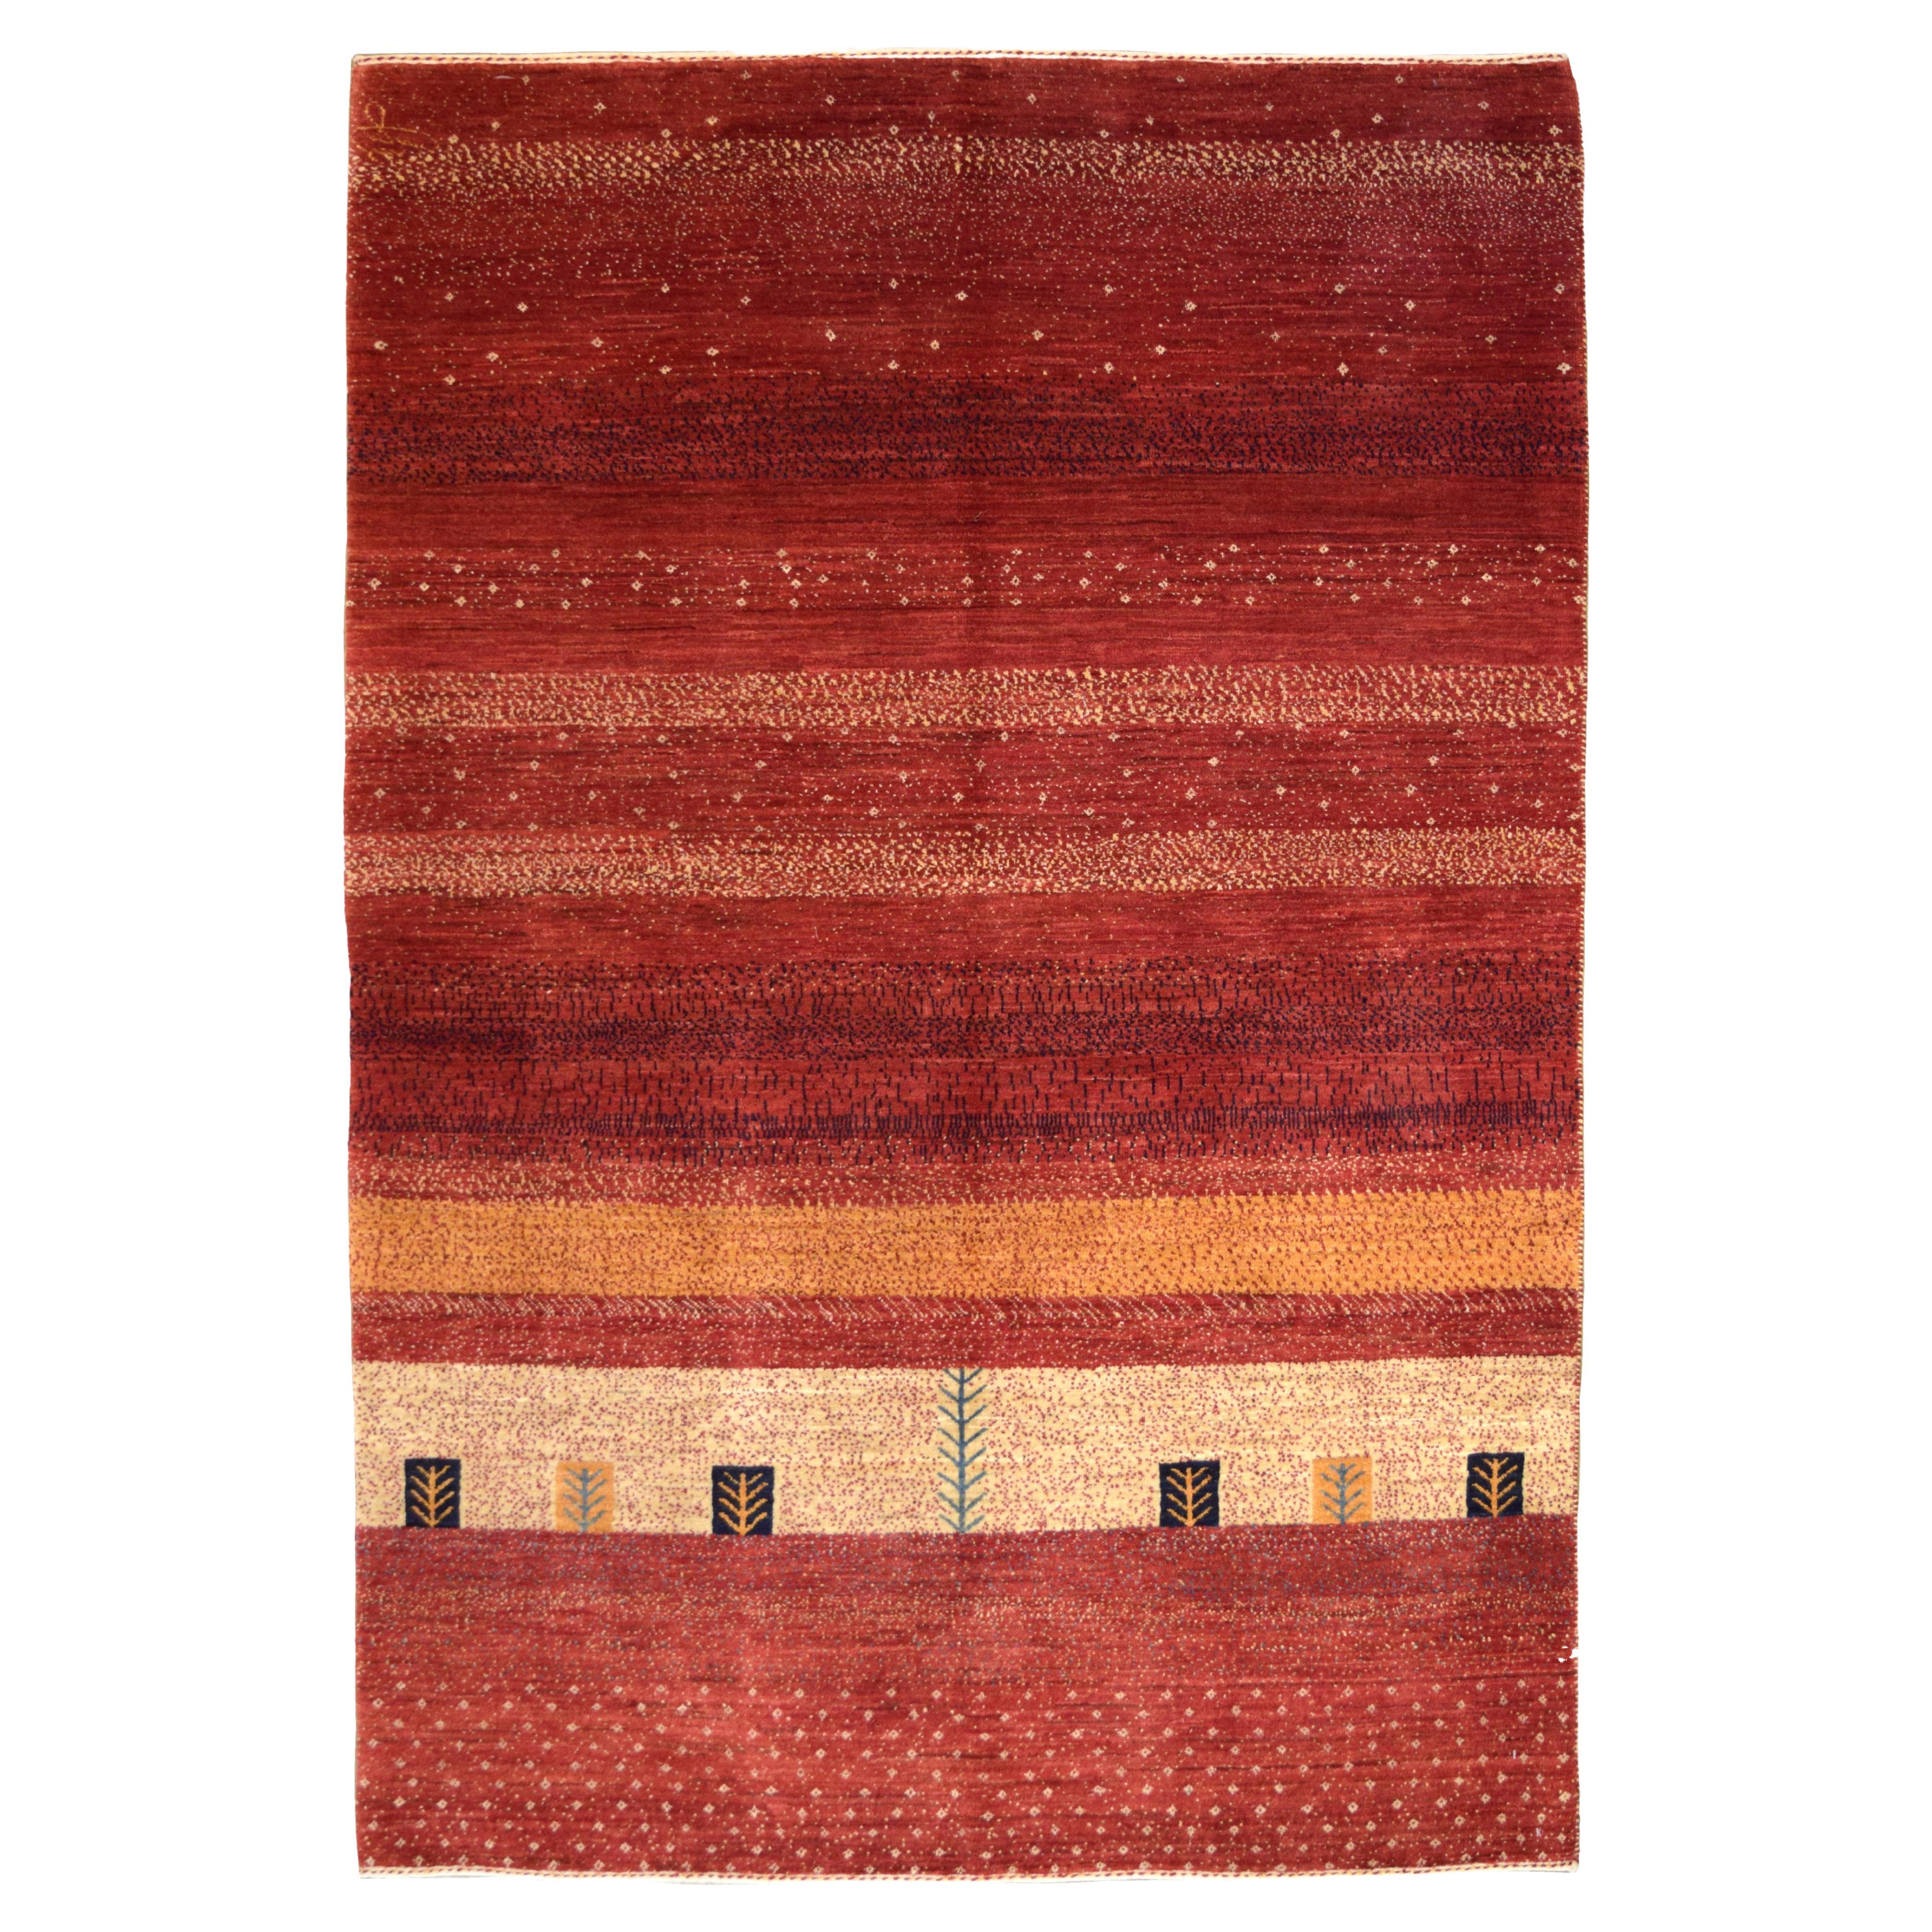 Roter, handgeknüpfter Übergangs- und Stammesszenen-Teppich aus persischer Wolle, 4' x 6'